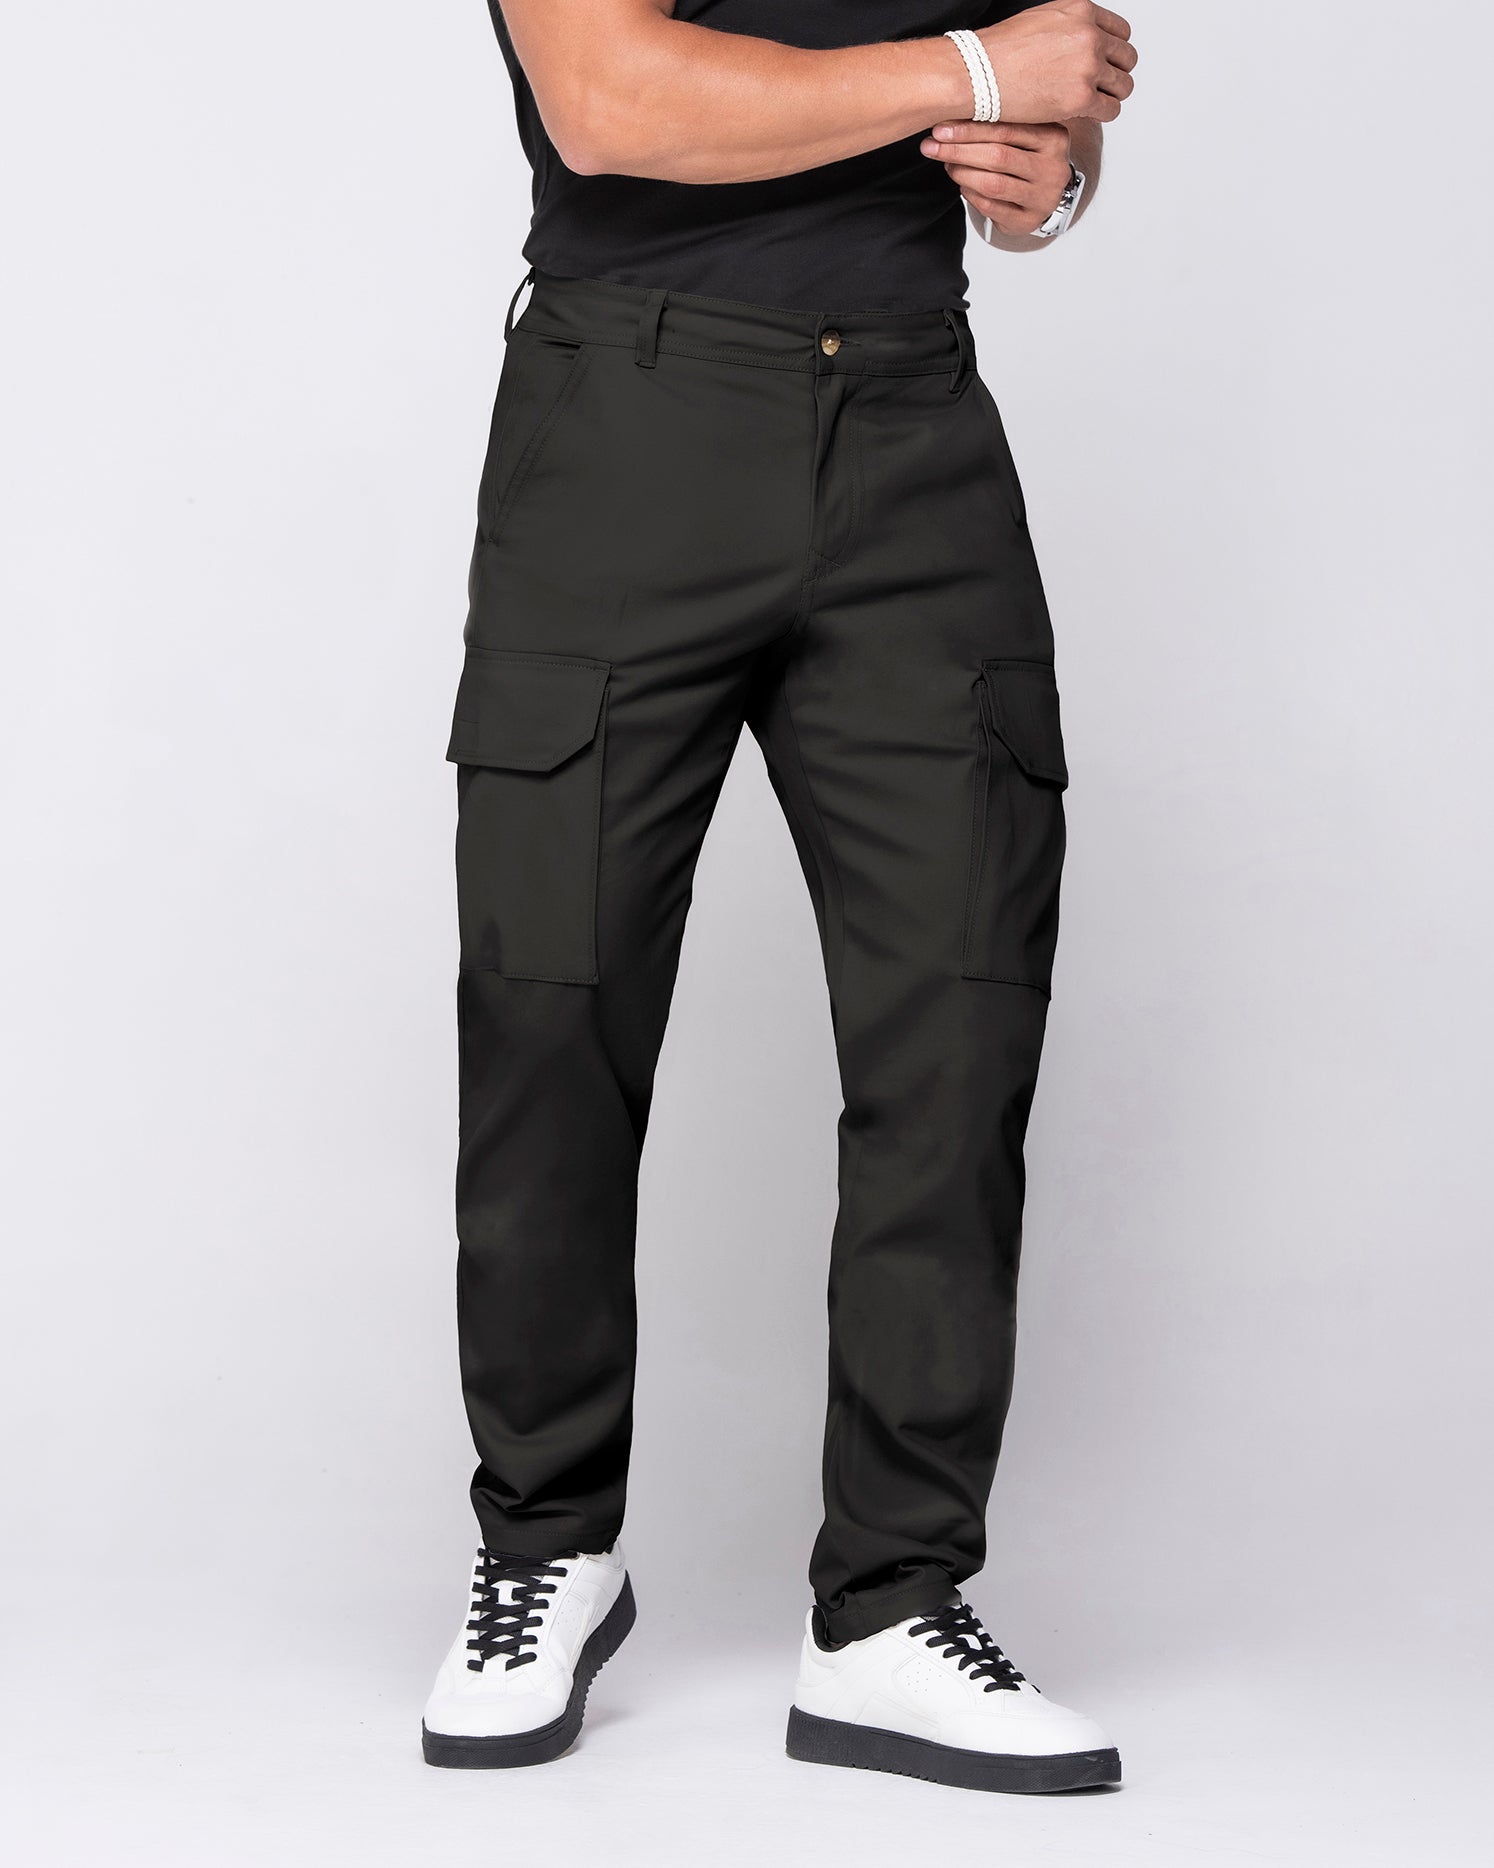 Pantalón Cargo Color Beige y Negro Marca Rappaz